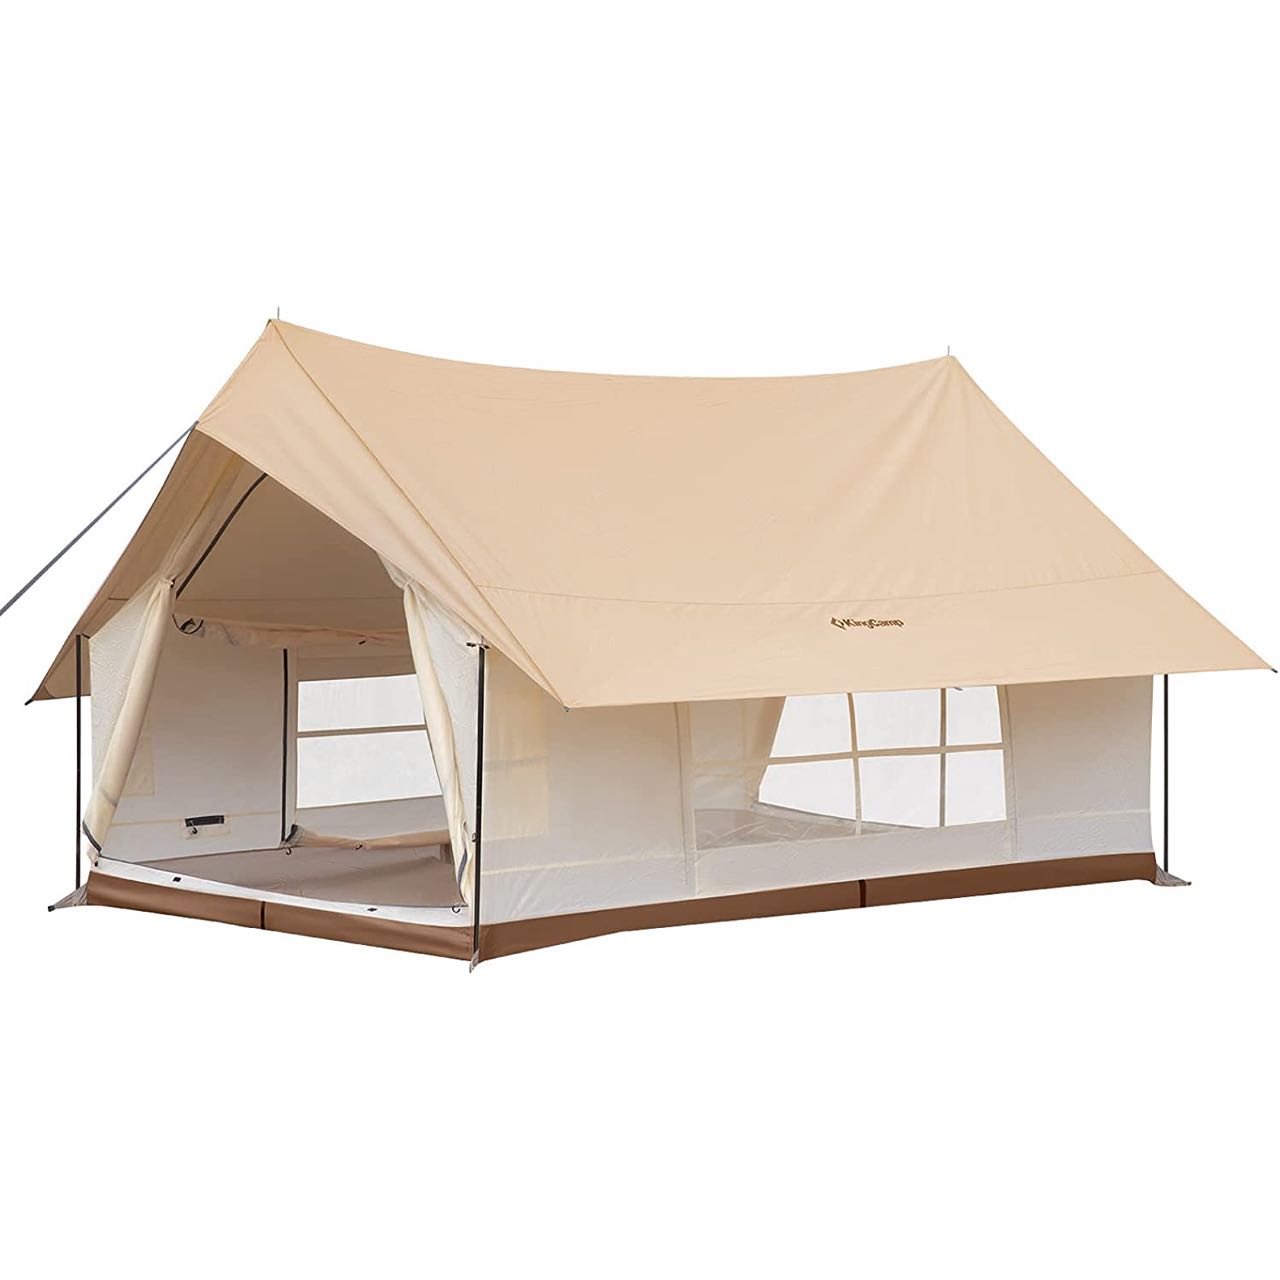 ベルテント 大型テント グランピング 直径7m モンゴルテント 防水対策 